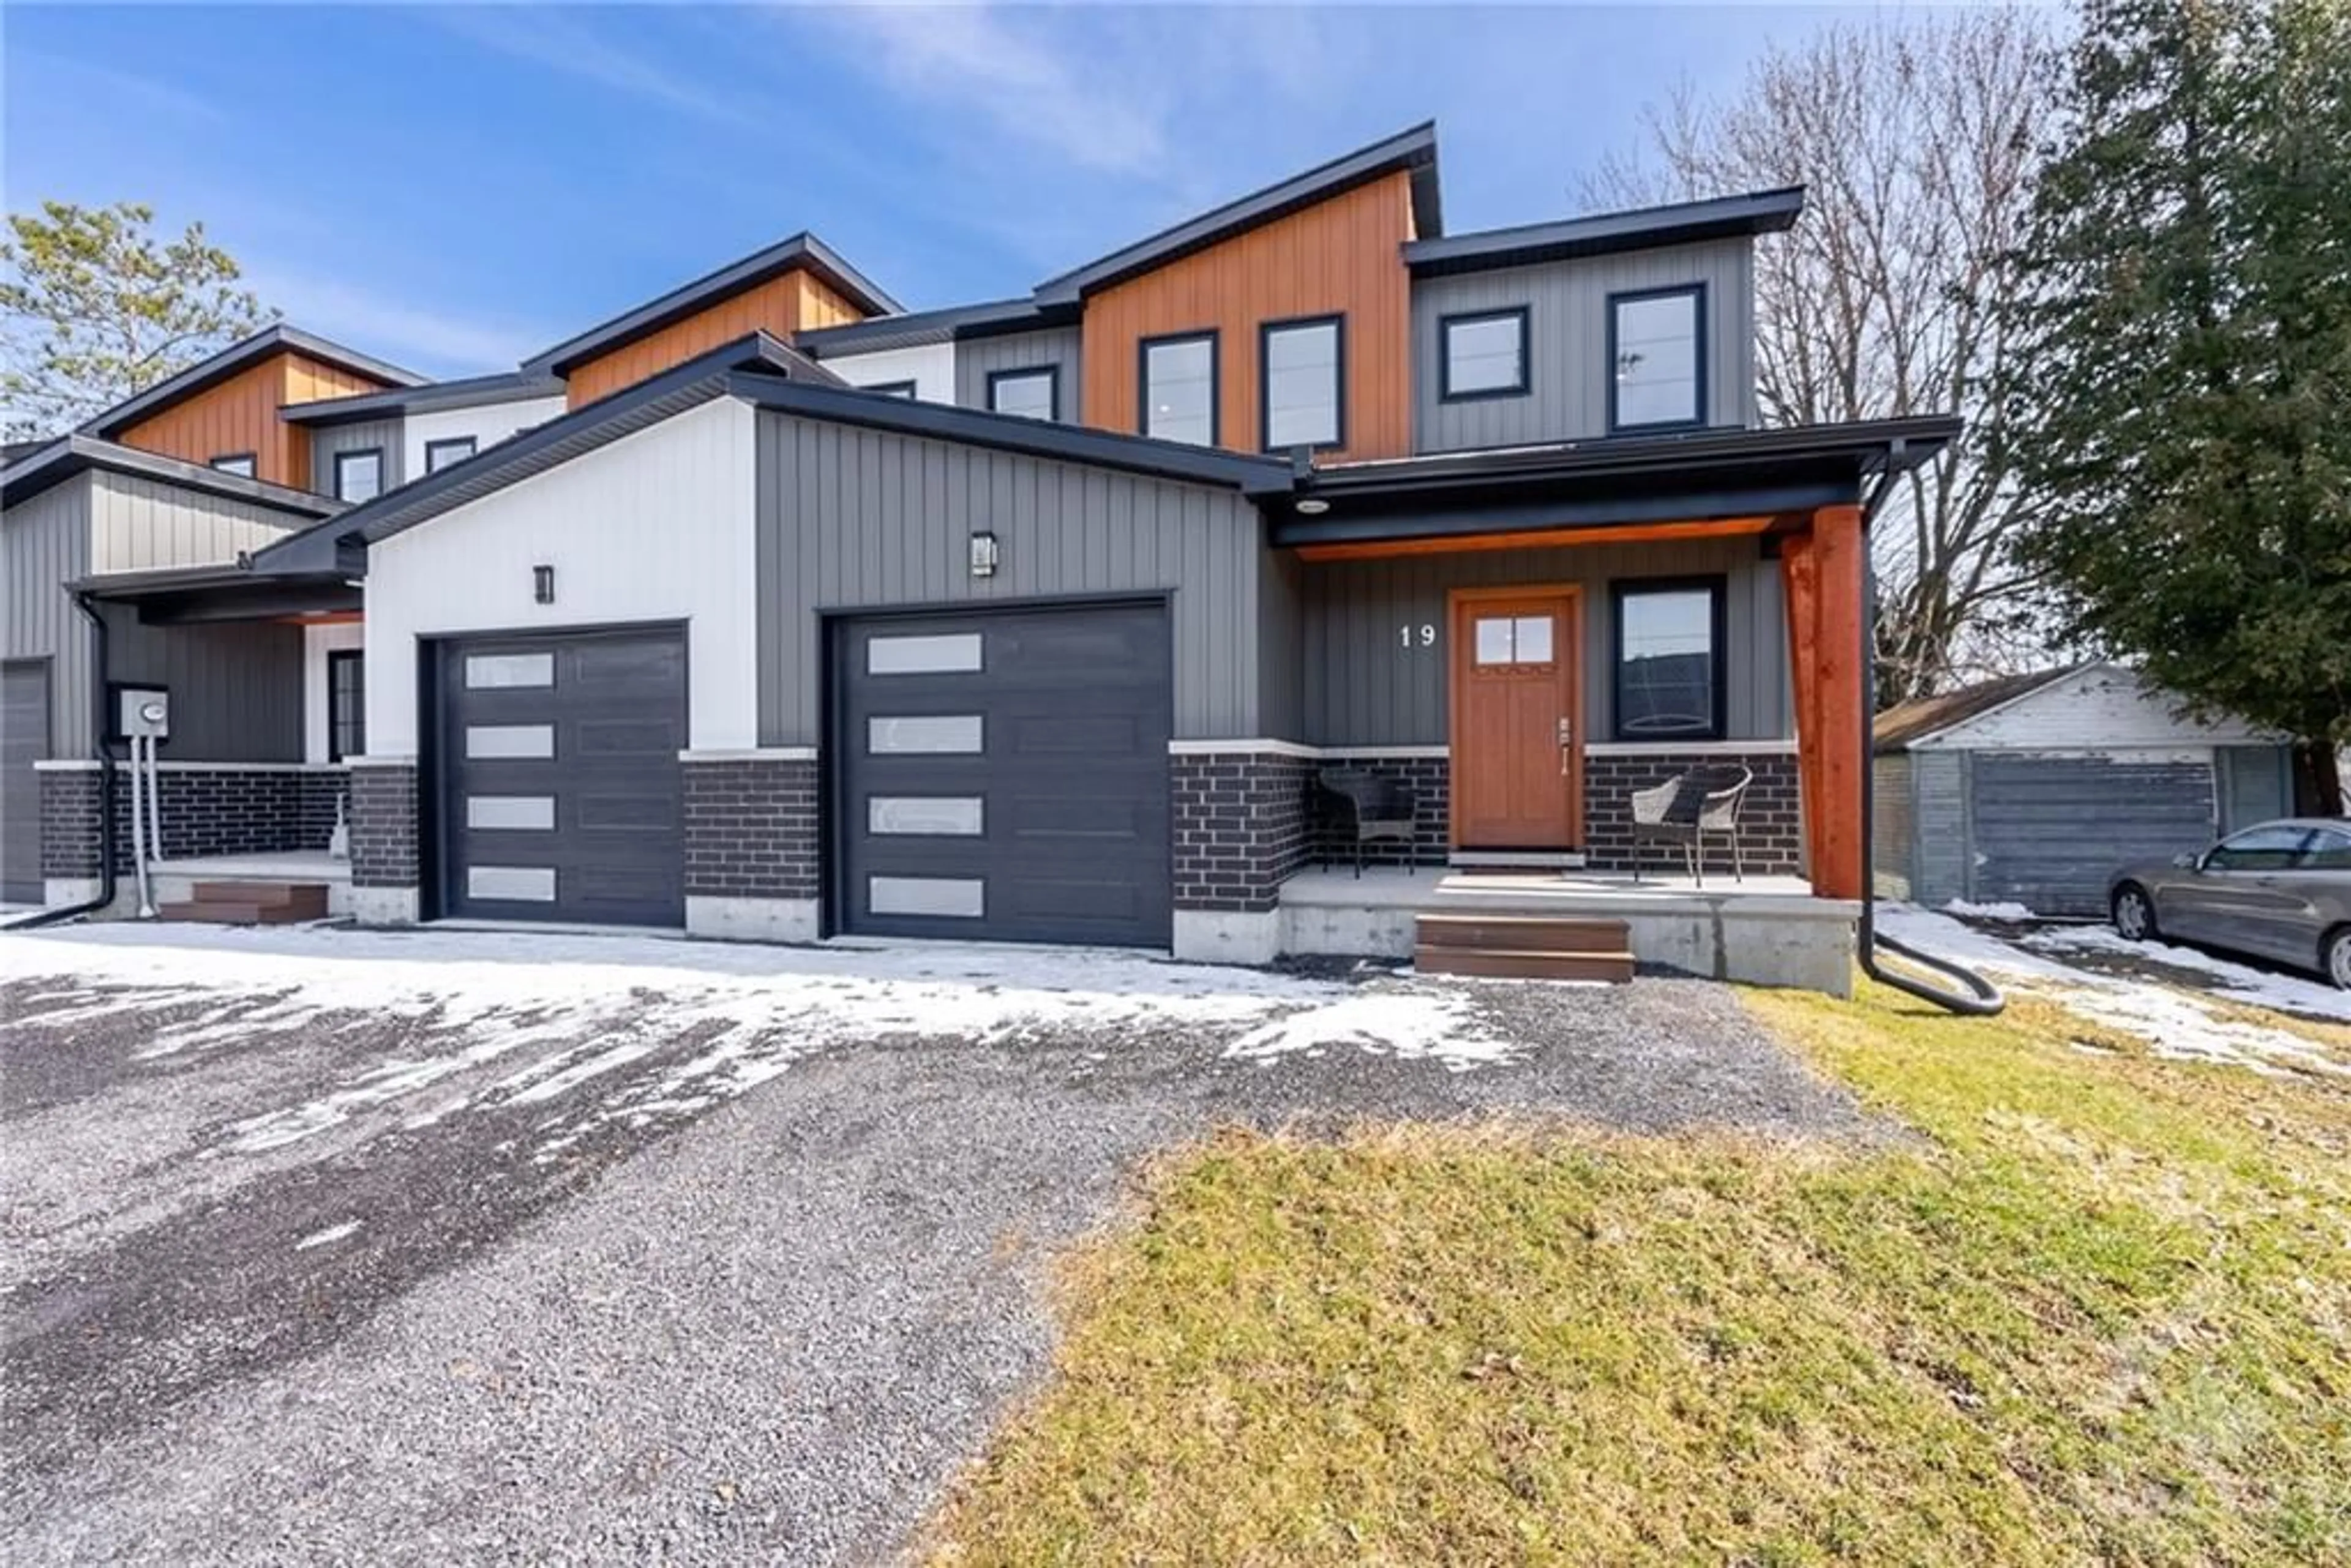 Home with brick exterior material for 19C DUNDAS St, Iroquois Ontario K0E 1K0